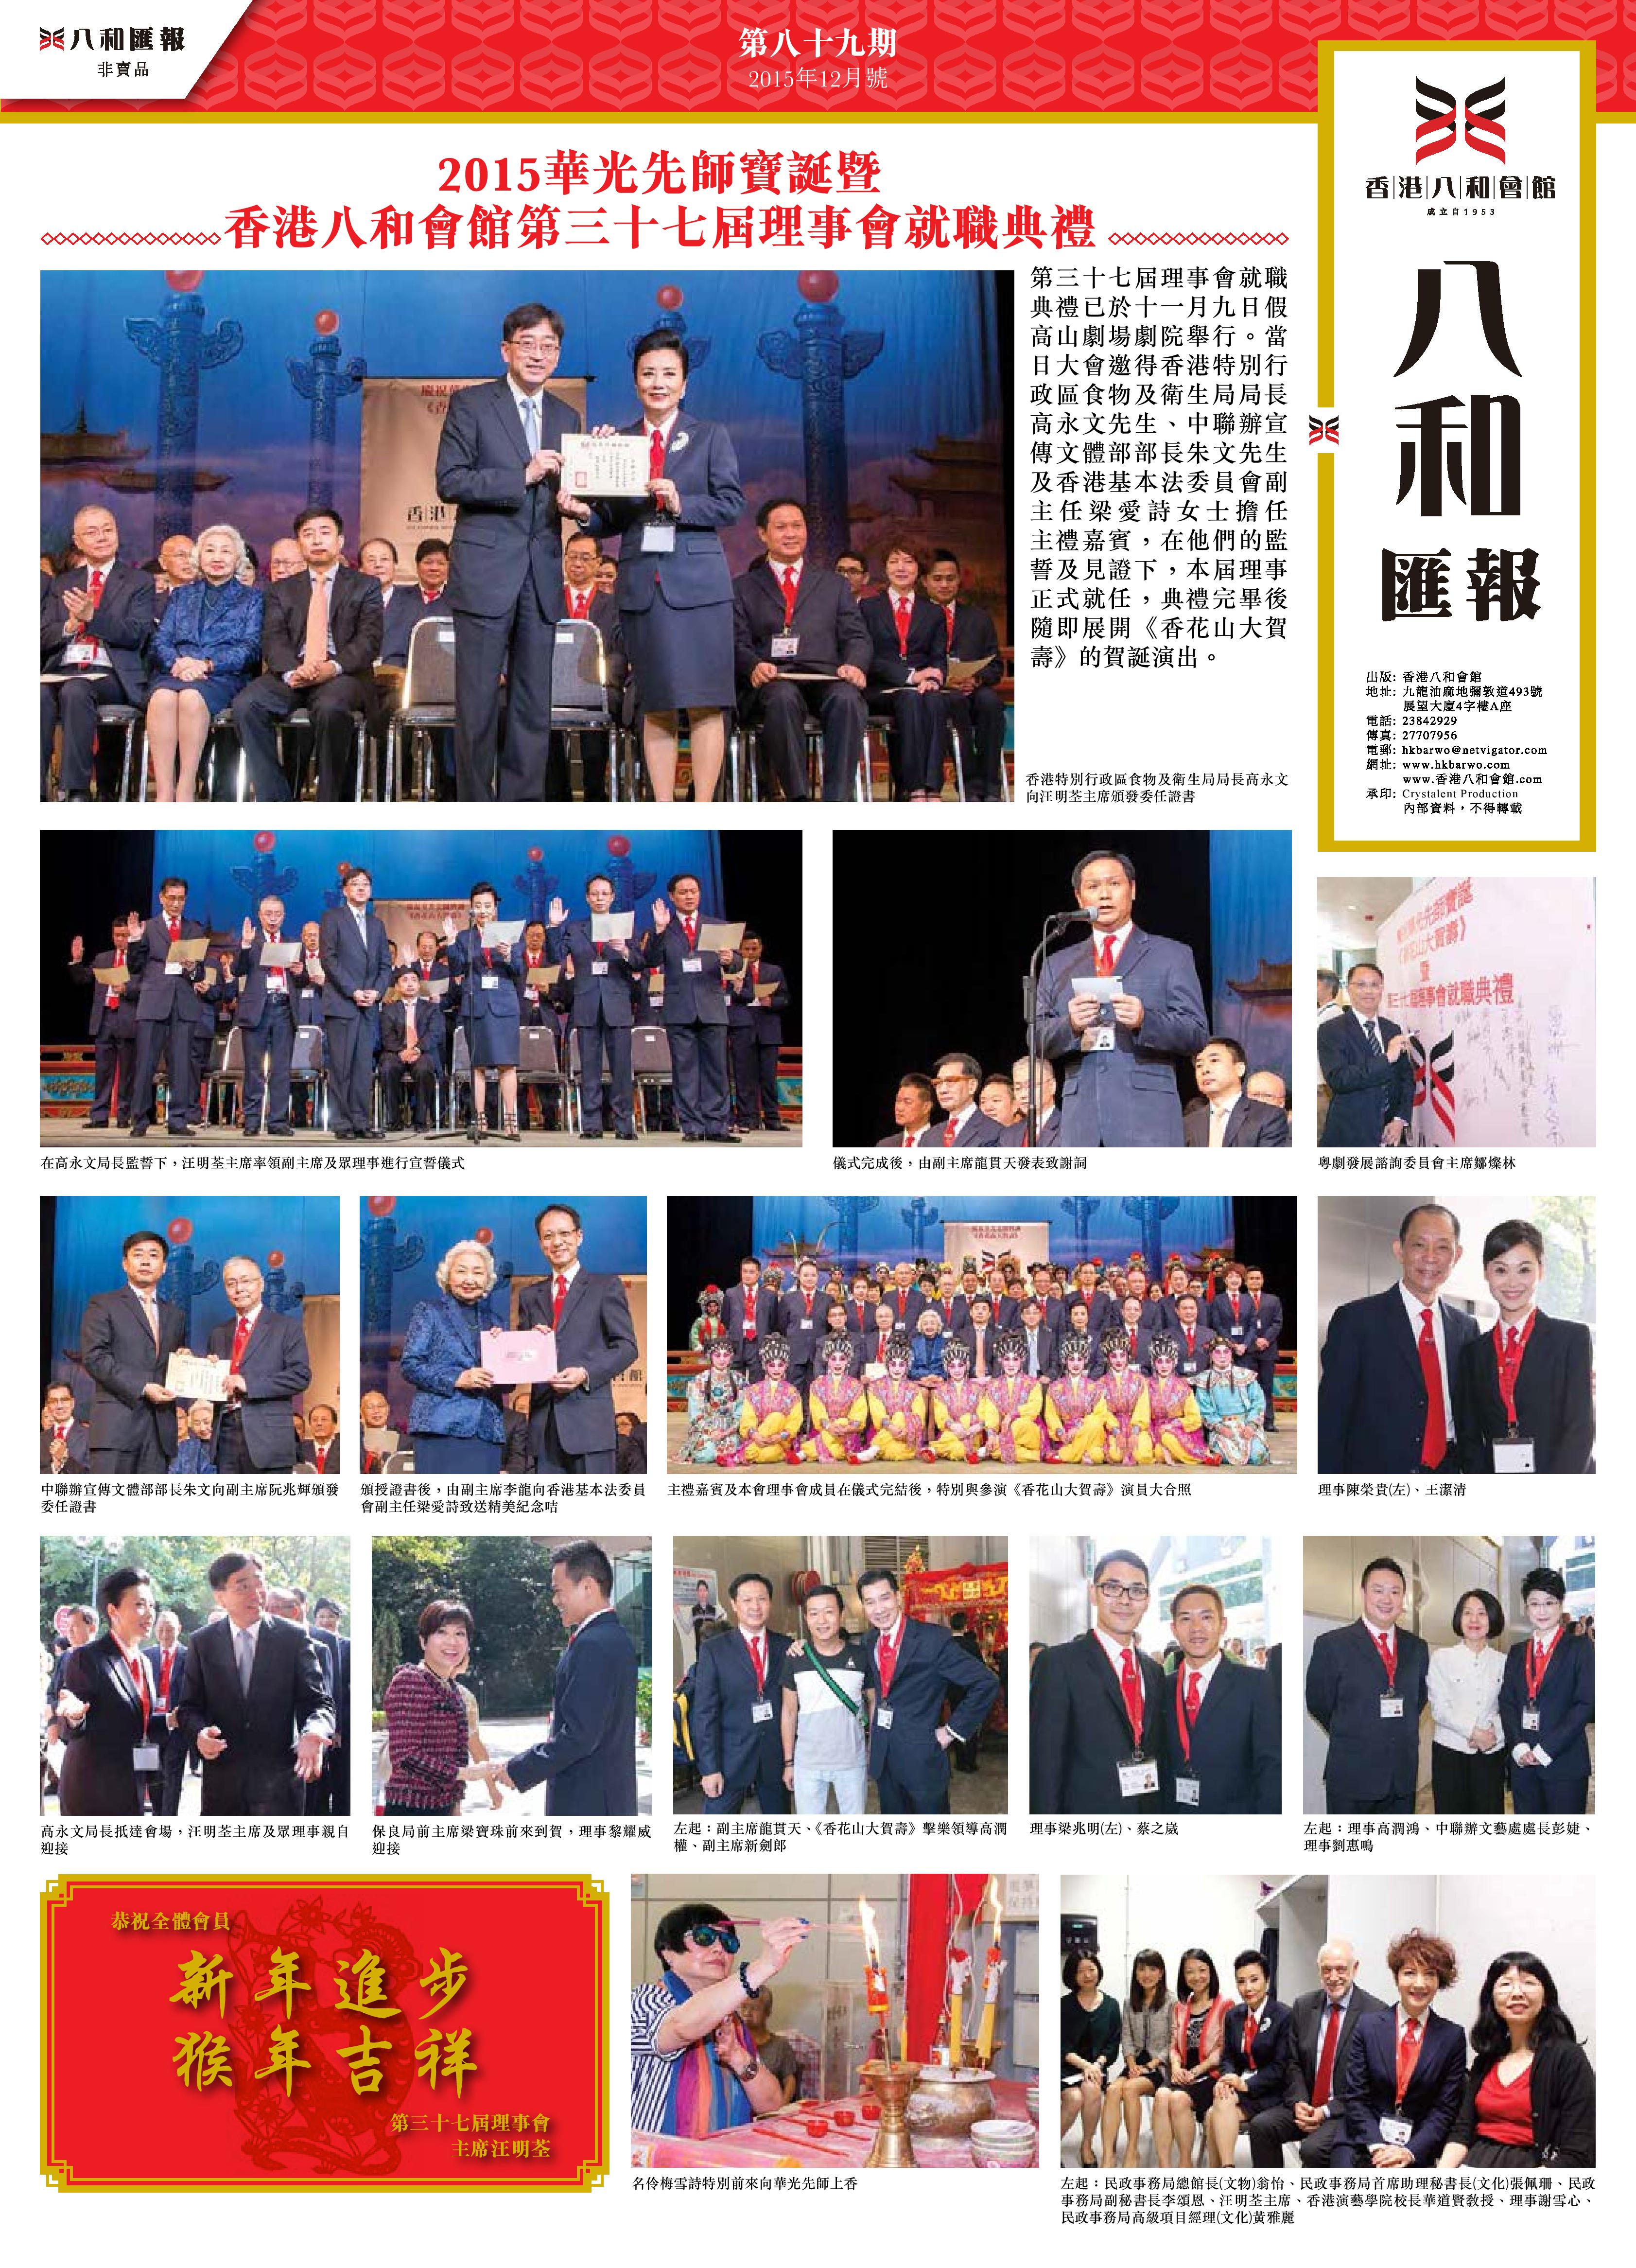 2015華光先師寶誕 暨 香港八和會館第三十七屆理事會就職典禮